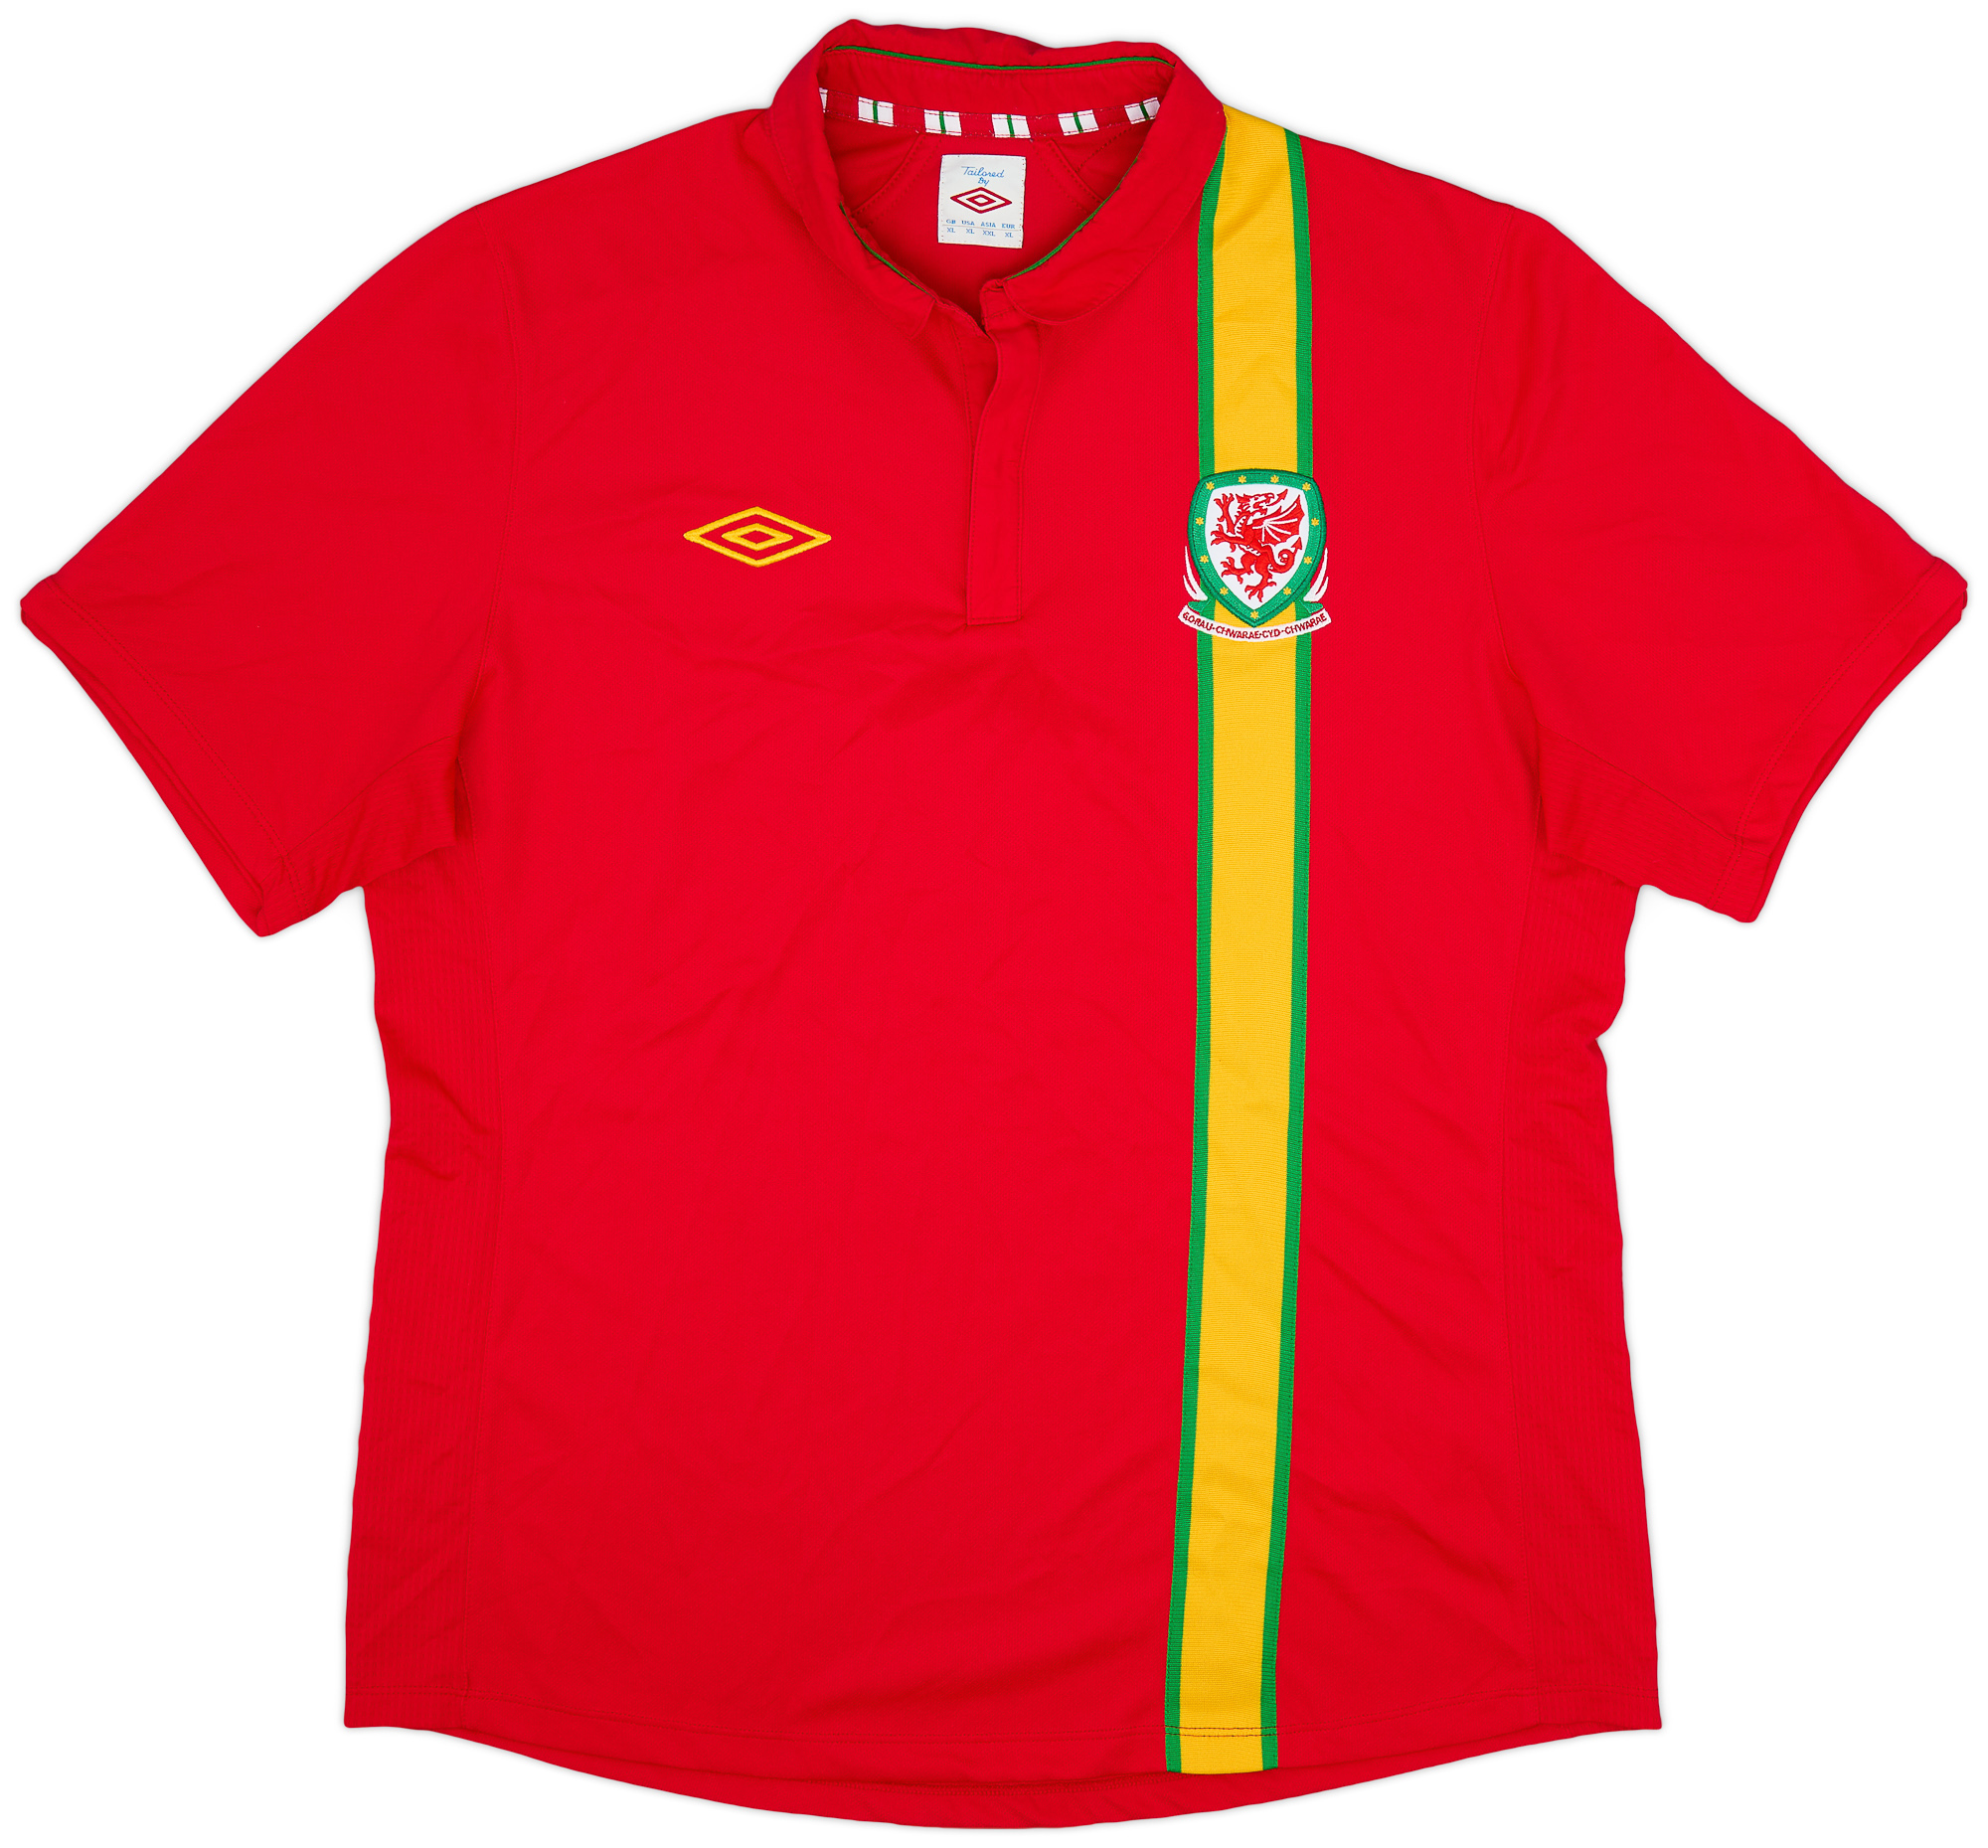 Wales  home shirt  (Original)